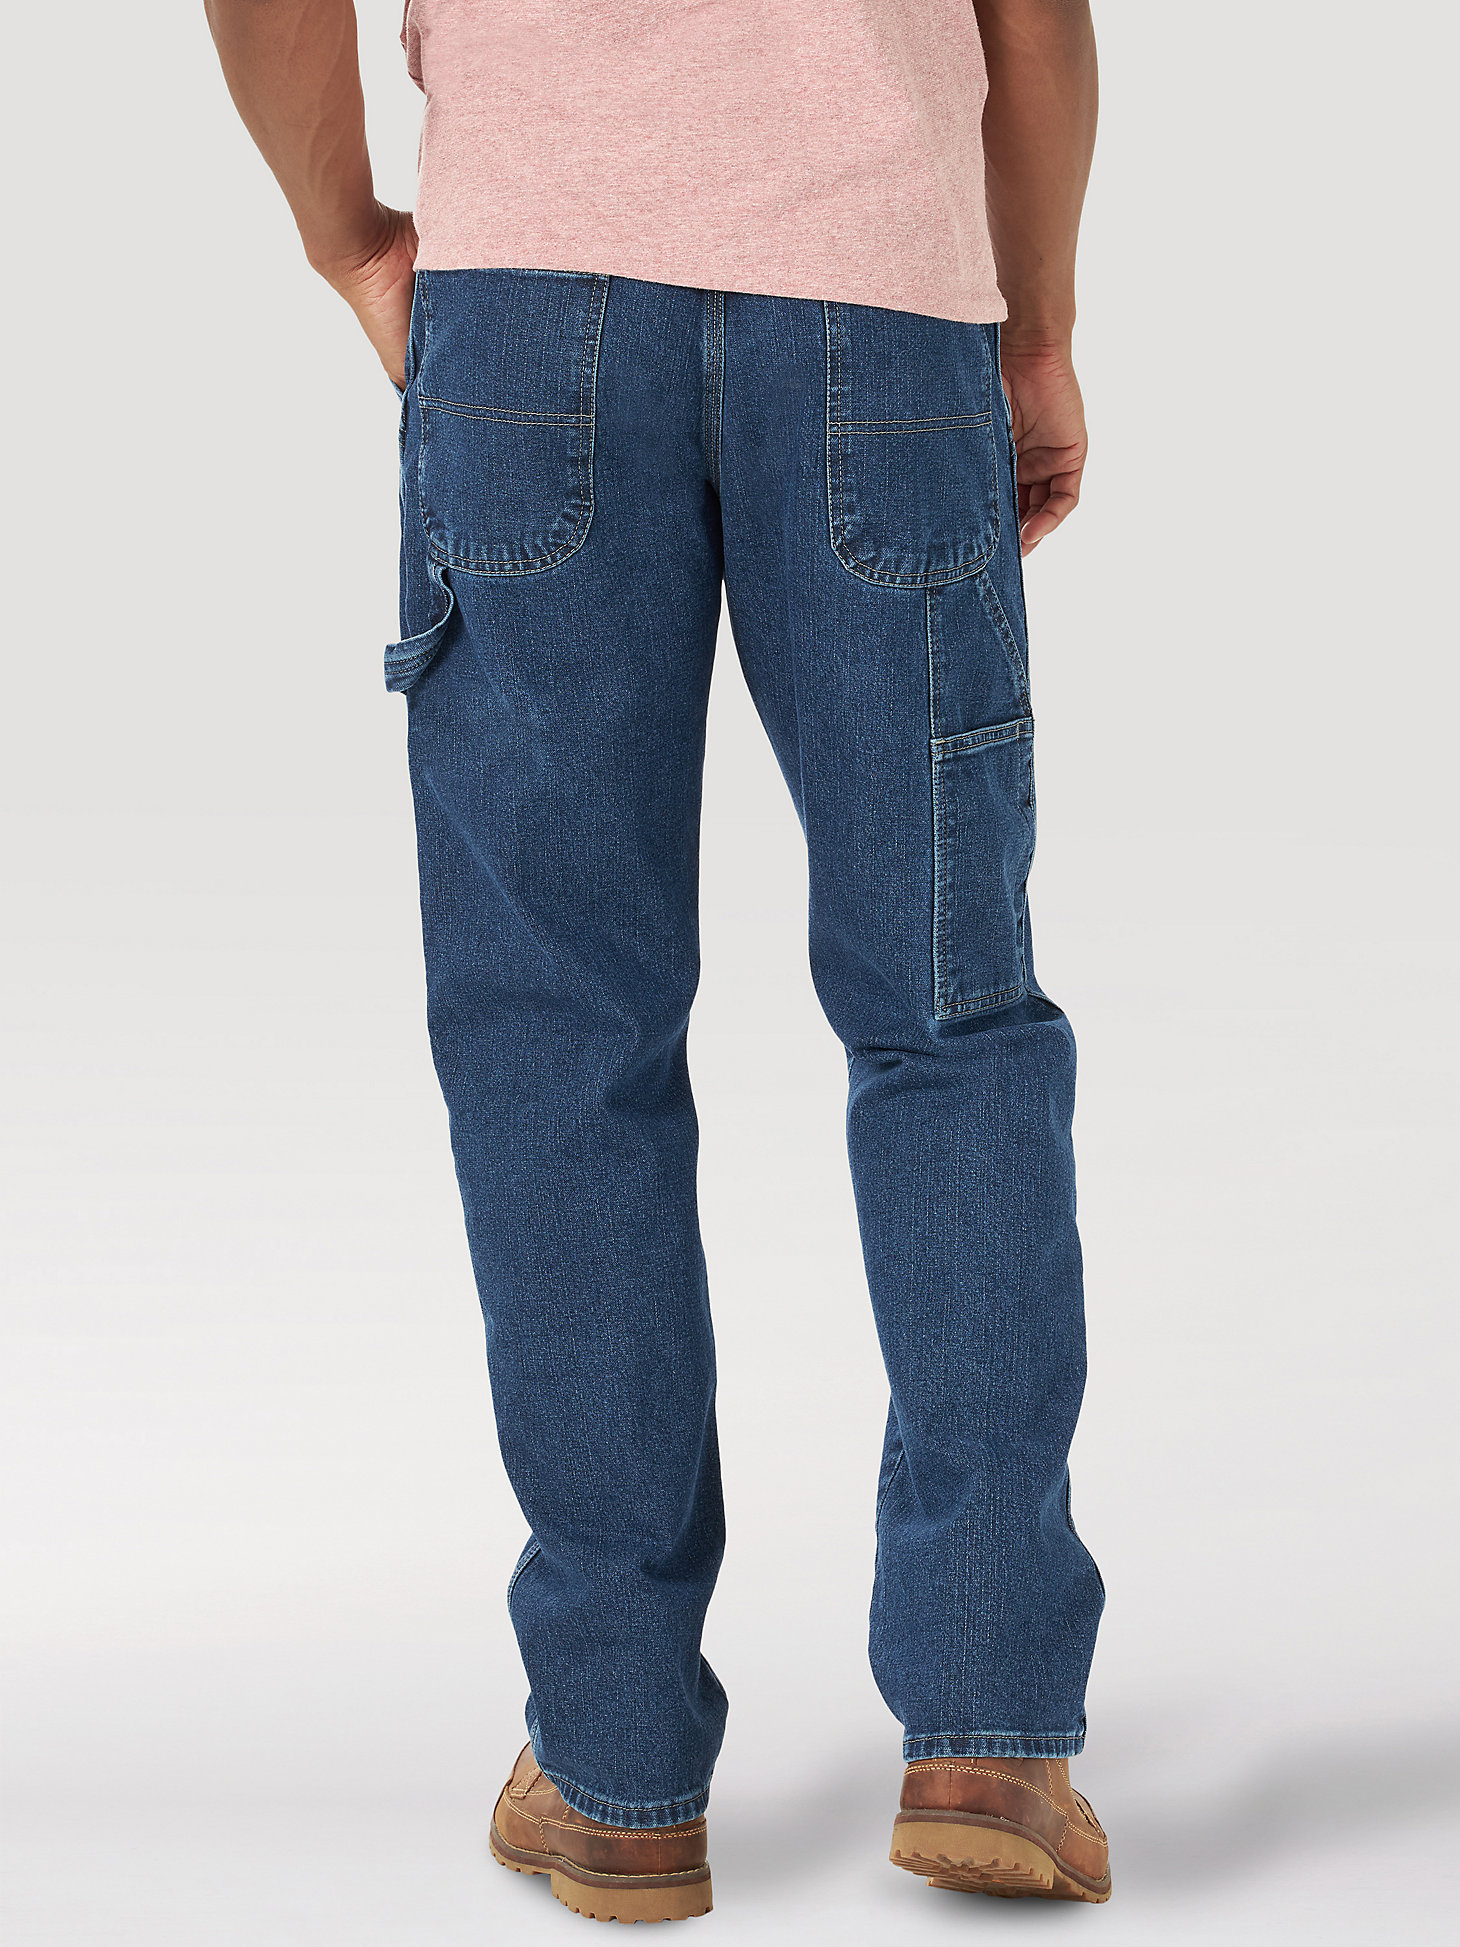 Wrangler® Men's Five Star Premium Carpenter Jean in Dark Vintage alternative view 1